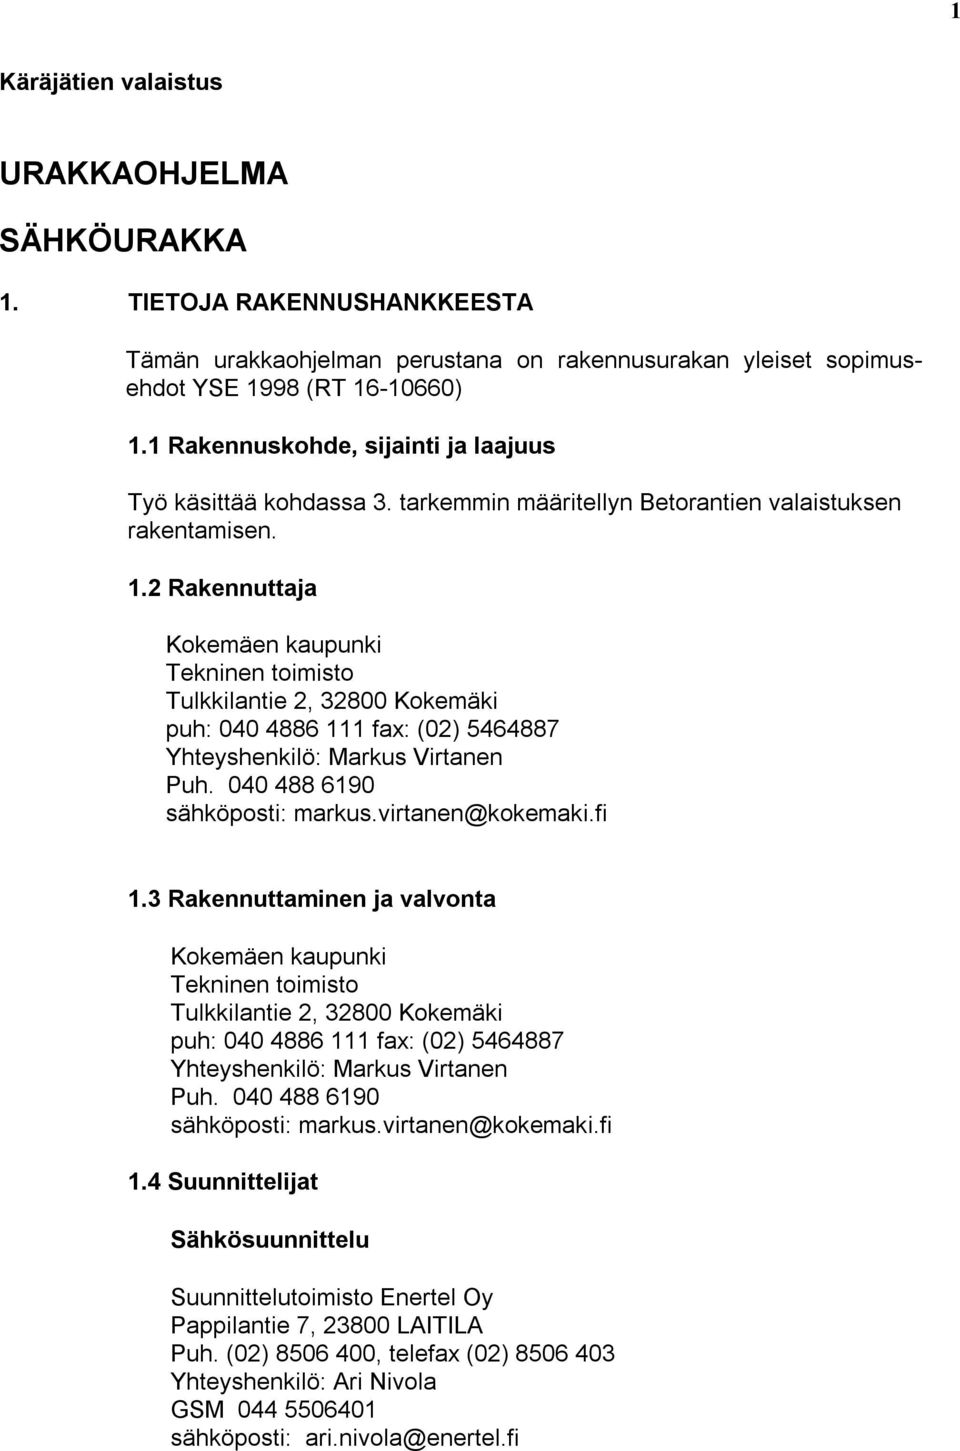 2 Rakennuttaja Tekninen toimisto Tulkkilantie 2, 32800 Kokemäki puh: 040 4886 111 fax: (02) 5464887 Yhteyshenkilö: Markus Virtanen Puh. 040 488 6190 sähköposti: markus.virtanen@kokemaki.fi 1.